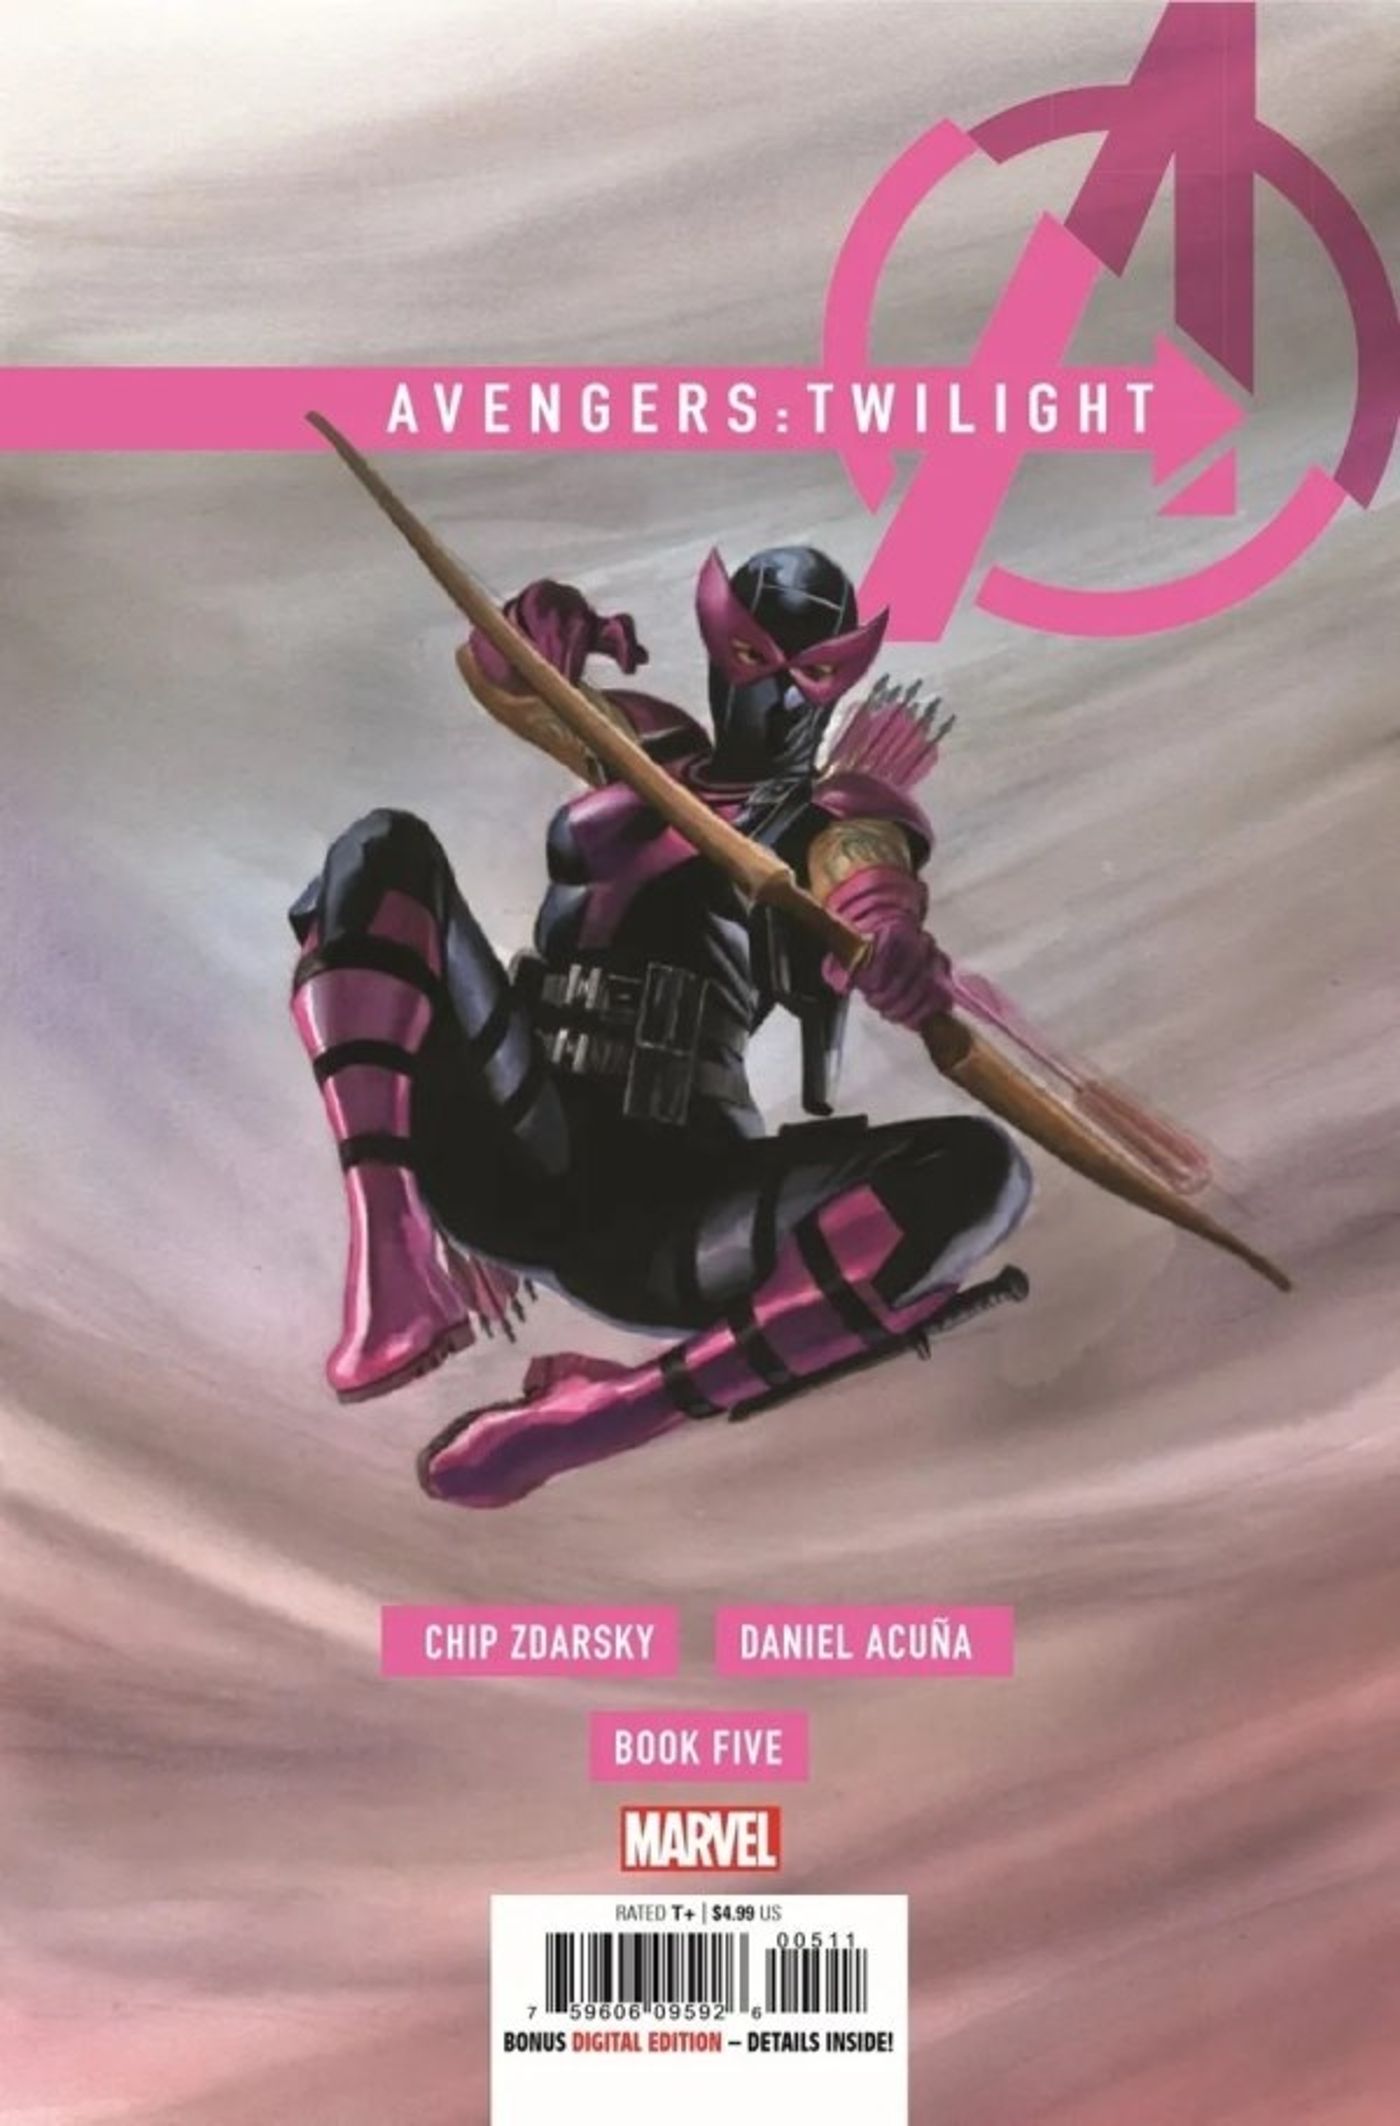 Arte da capa de Vingadores: Crepúsculo #5 com Hawkeye